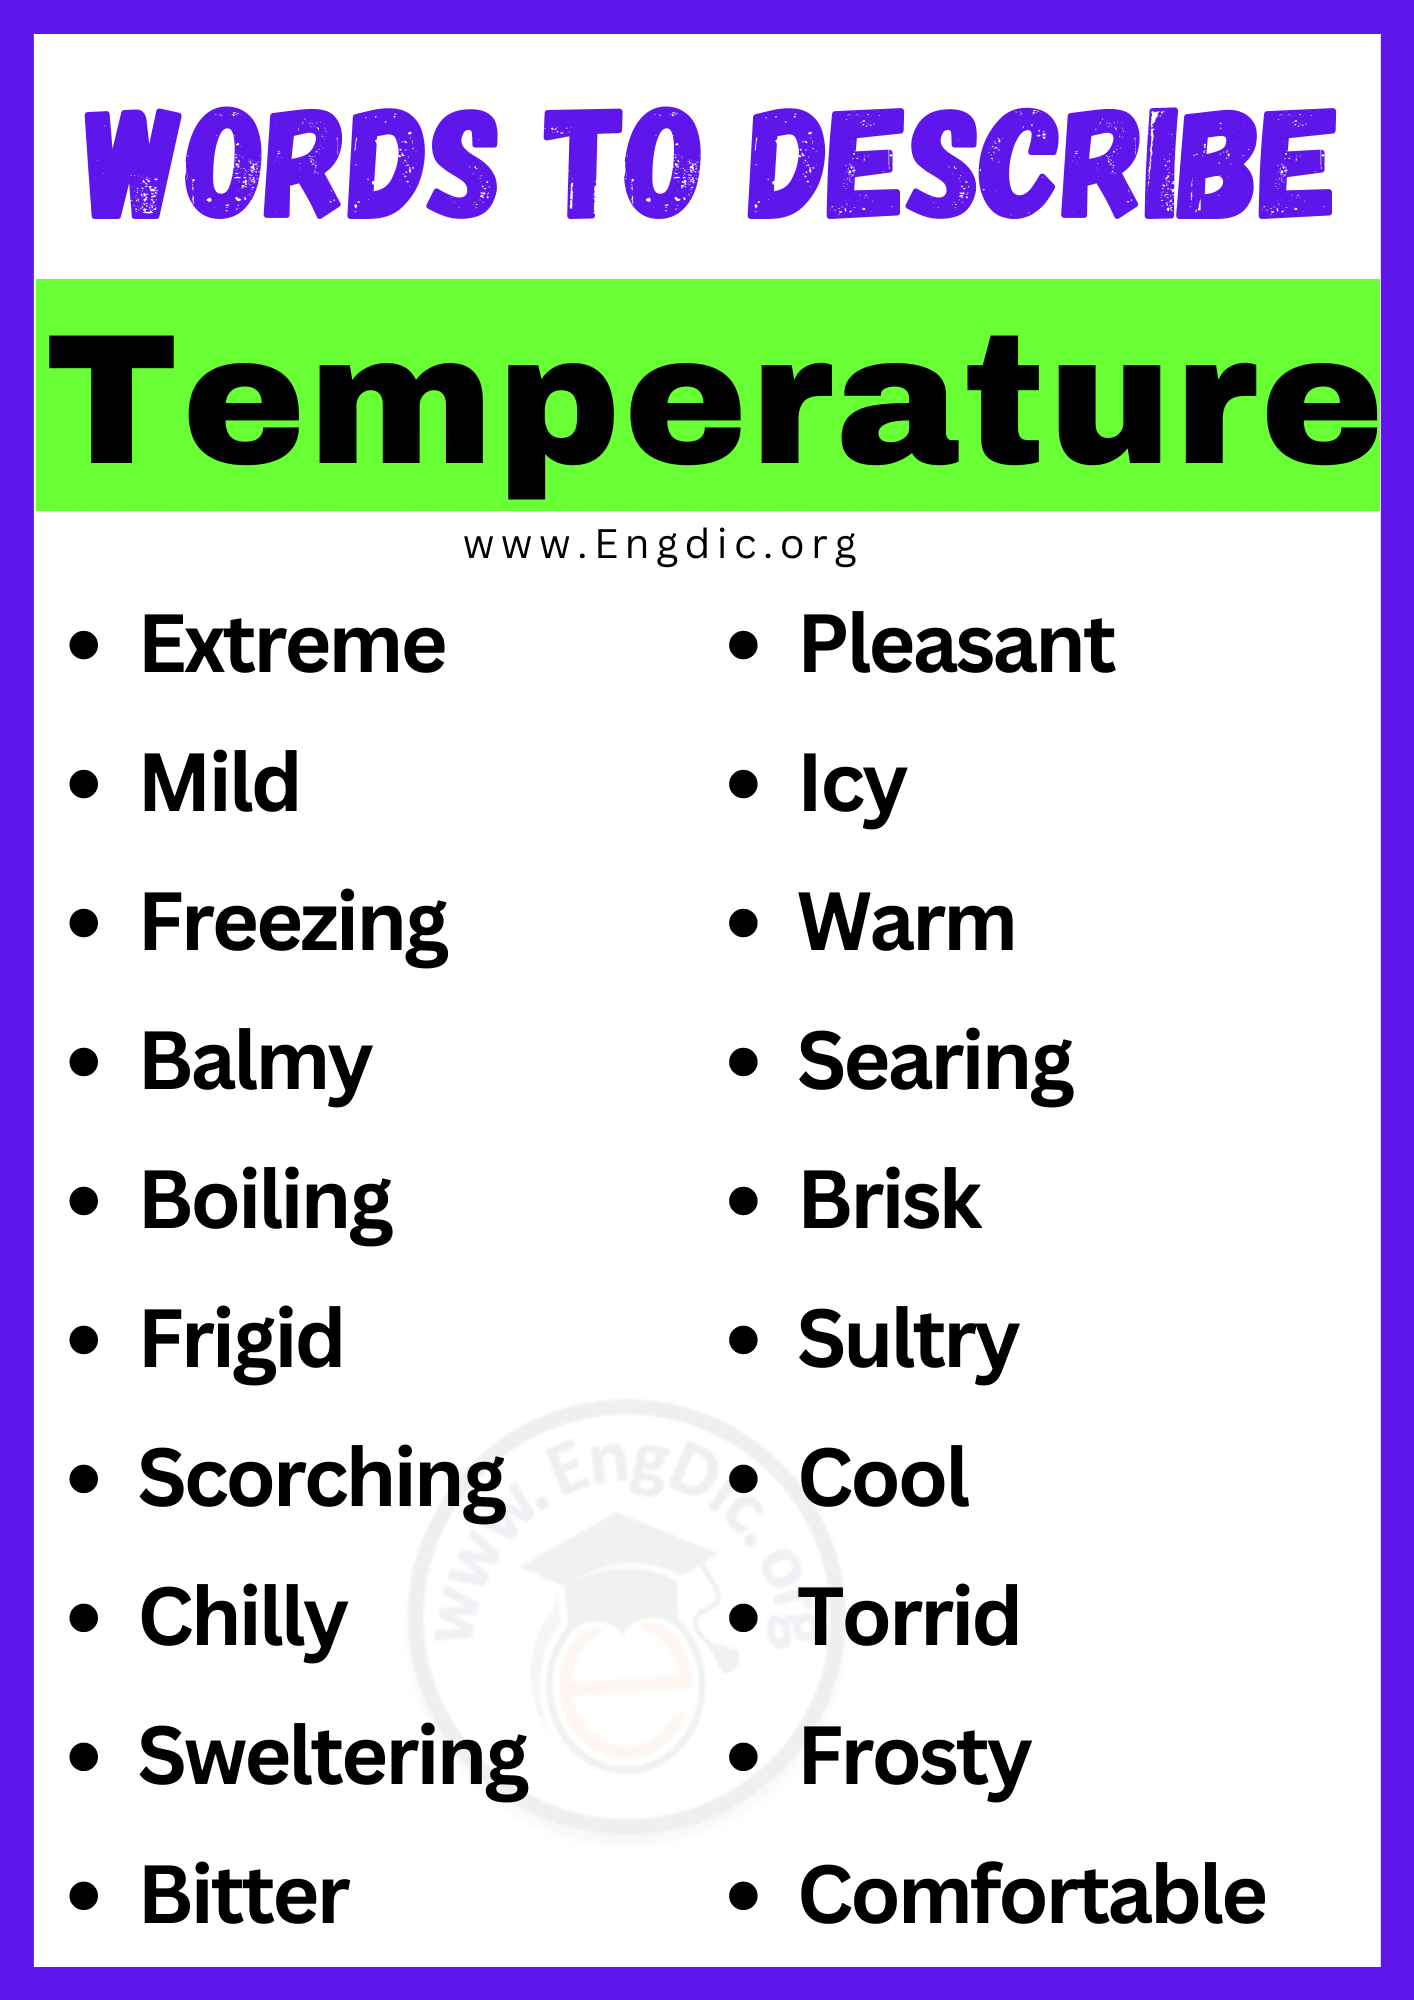 Words to Describe Temperature